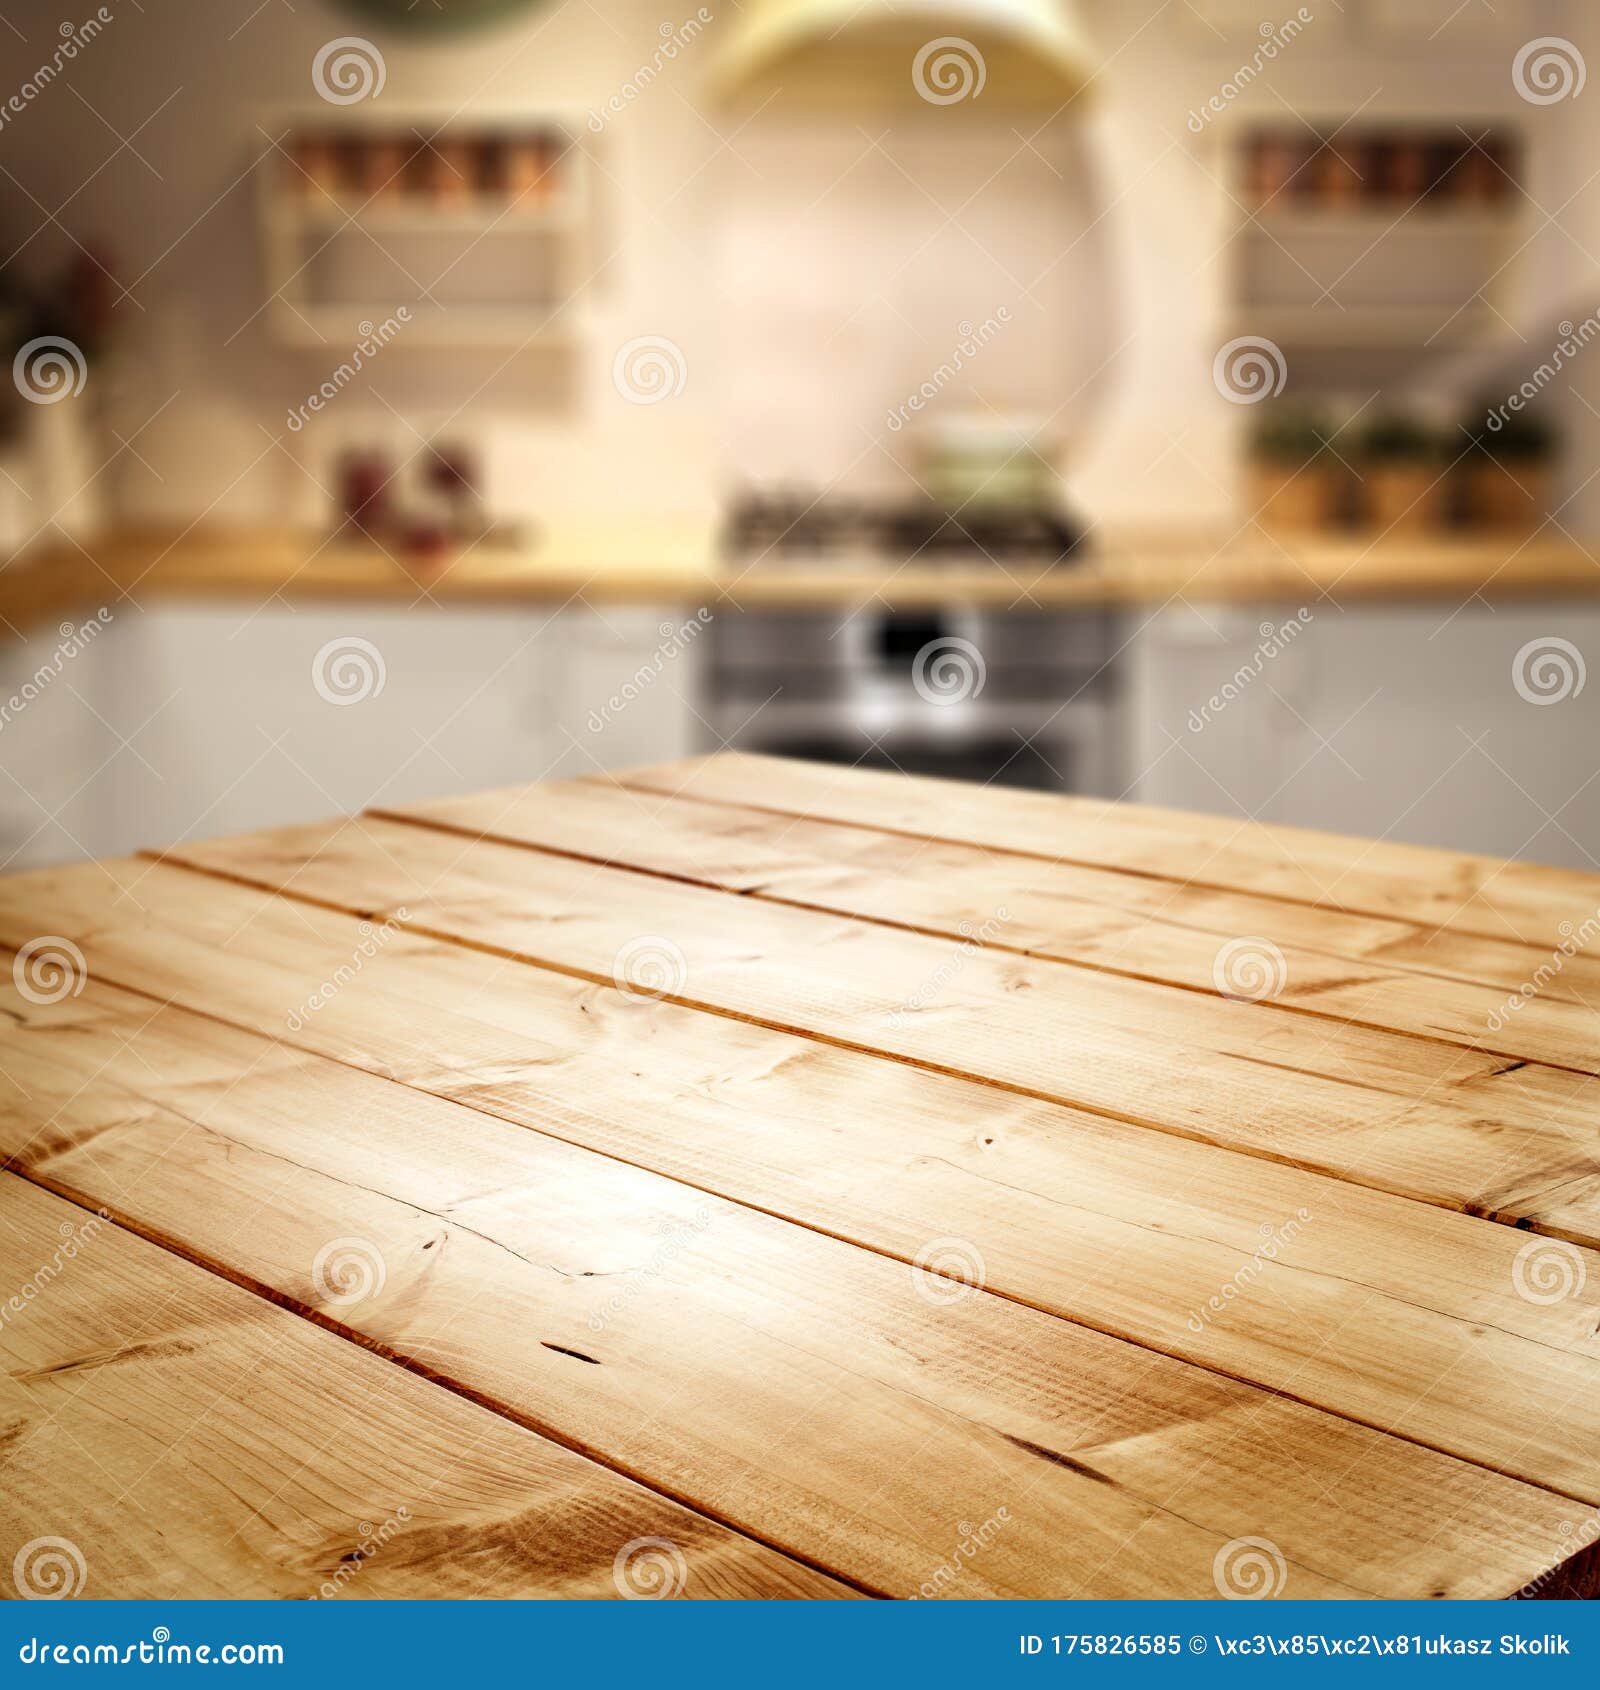 Bàn gỗ: Bàn gỗ đẹp và chất lượng sẽ là điểm nhấn quan trọng trong phòng ăn và sự lựa chọn hoàn hảo cho không gian làm việc của bạn. Hãy khám phá các loại bàn gỗ độc đáo và chất lượng để tạo nên một không gian sống tối giản và đẳng cấp.